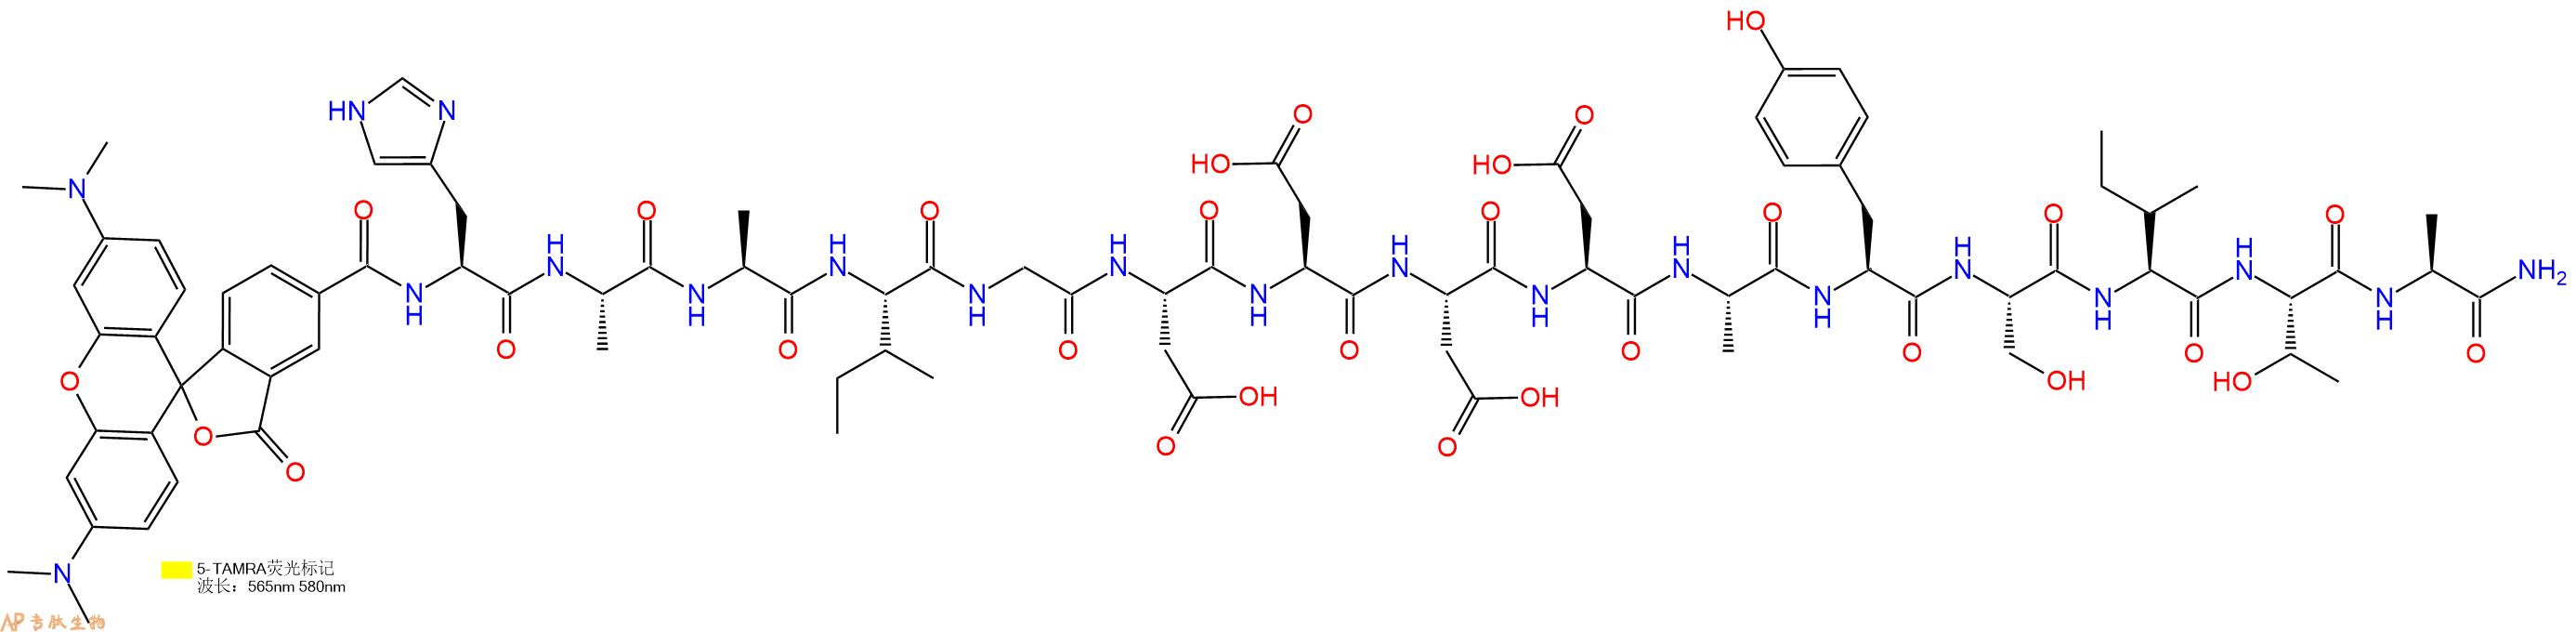 专肽生物产品5TAMRA-HAAIGDDDDAYSITA-NH2